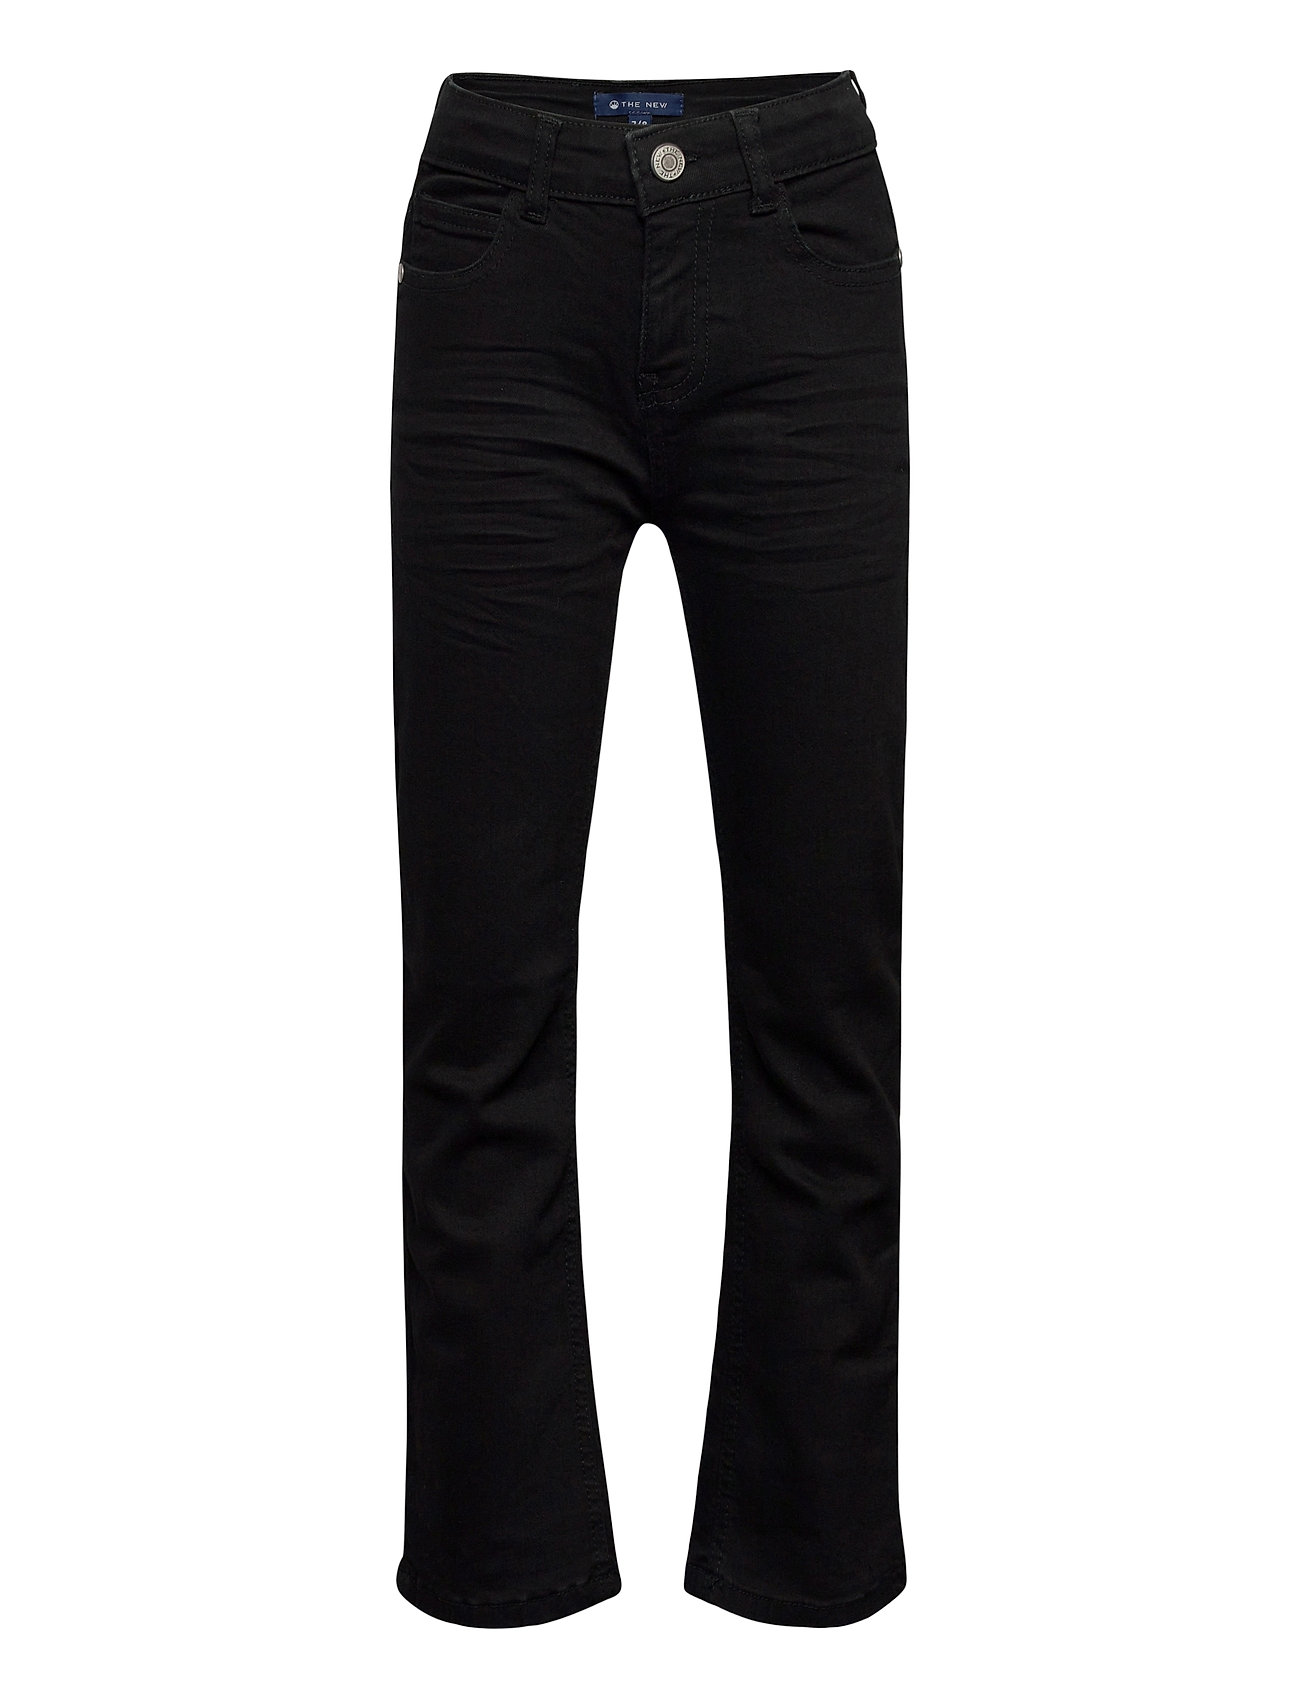 The New Stockholm Regular Jeans Col. Black Wash 990 - Bottoms